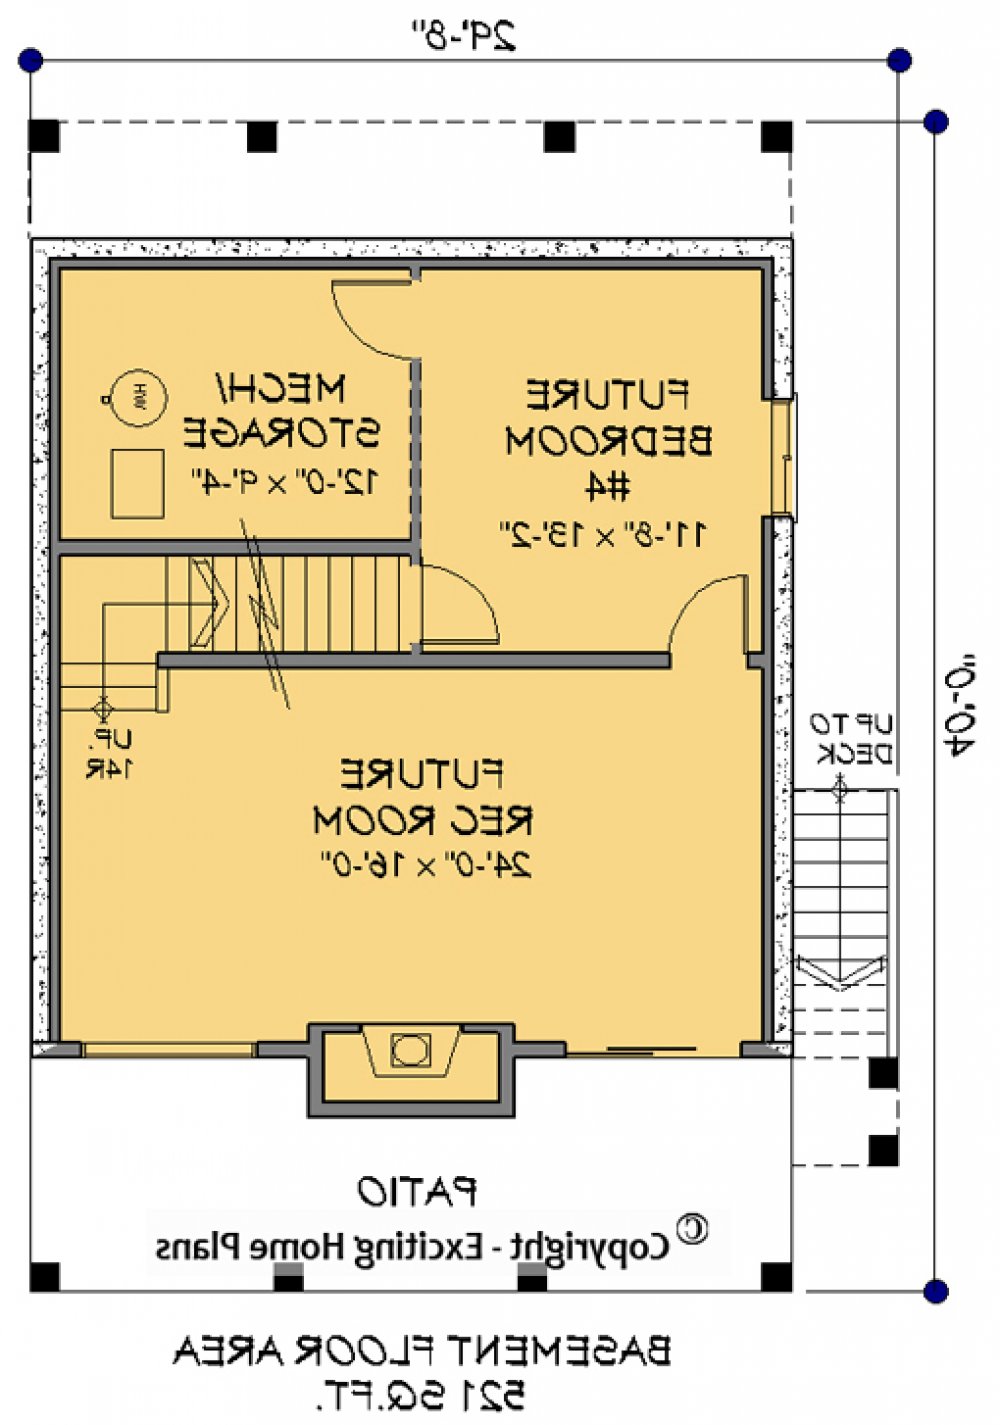 House Plan E1114-10 Lower Floor Plan REVERSE